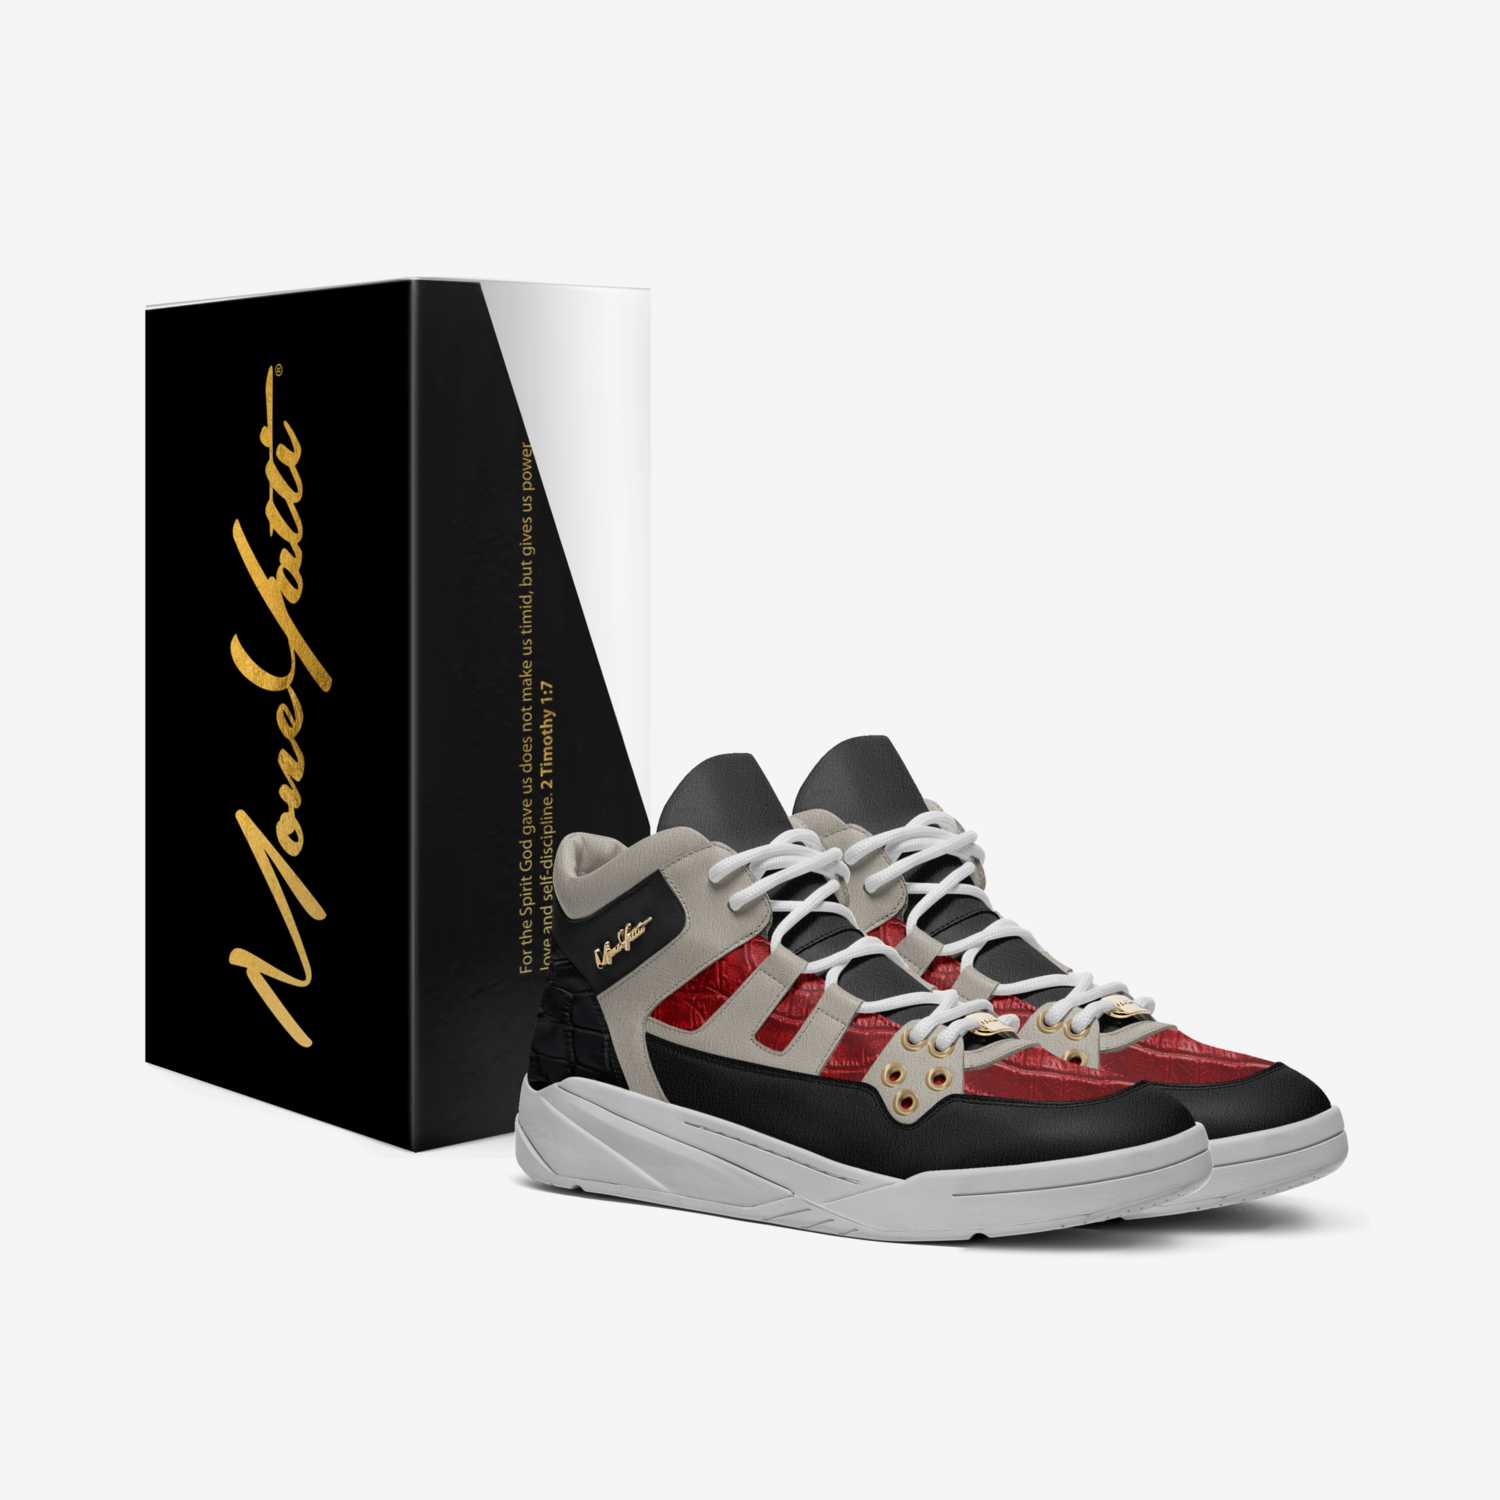 MONEYATTI DRIFT 001 custom made in Italy shoes by Moneyatti Brand | Box view